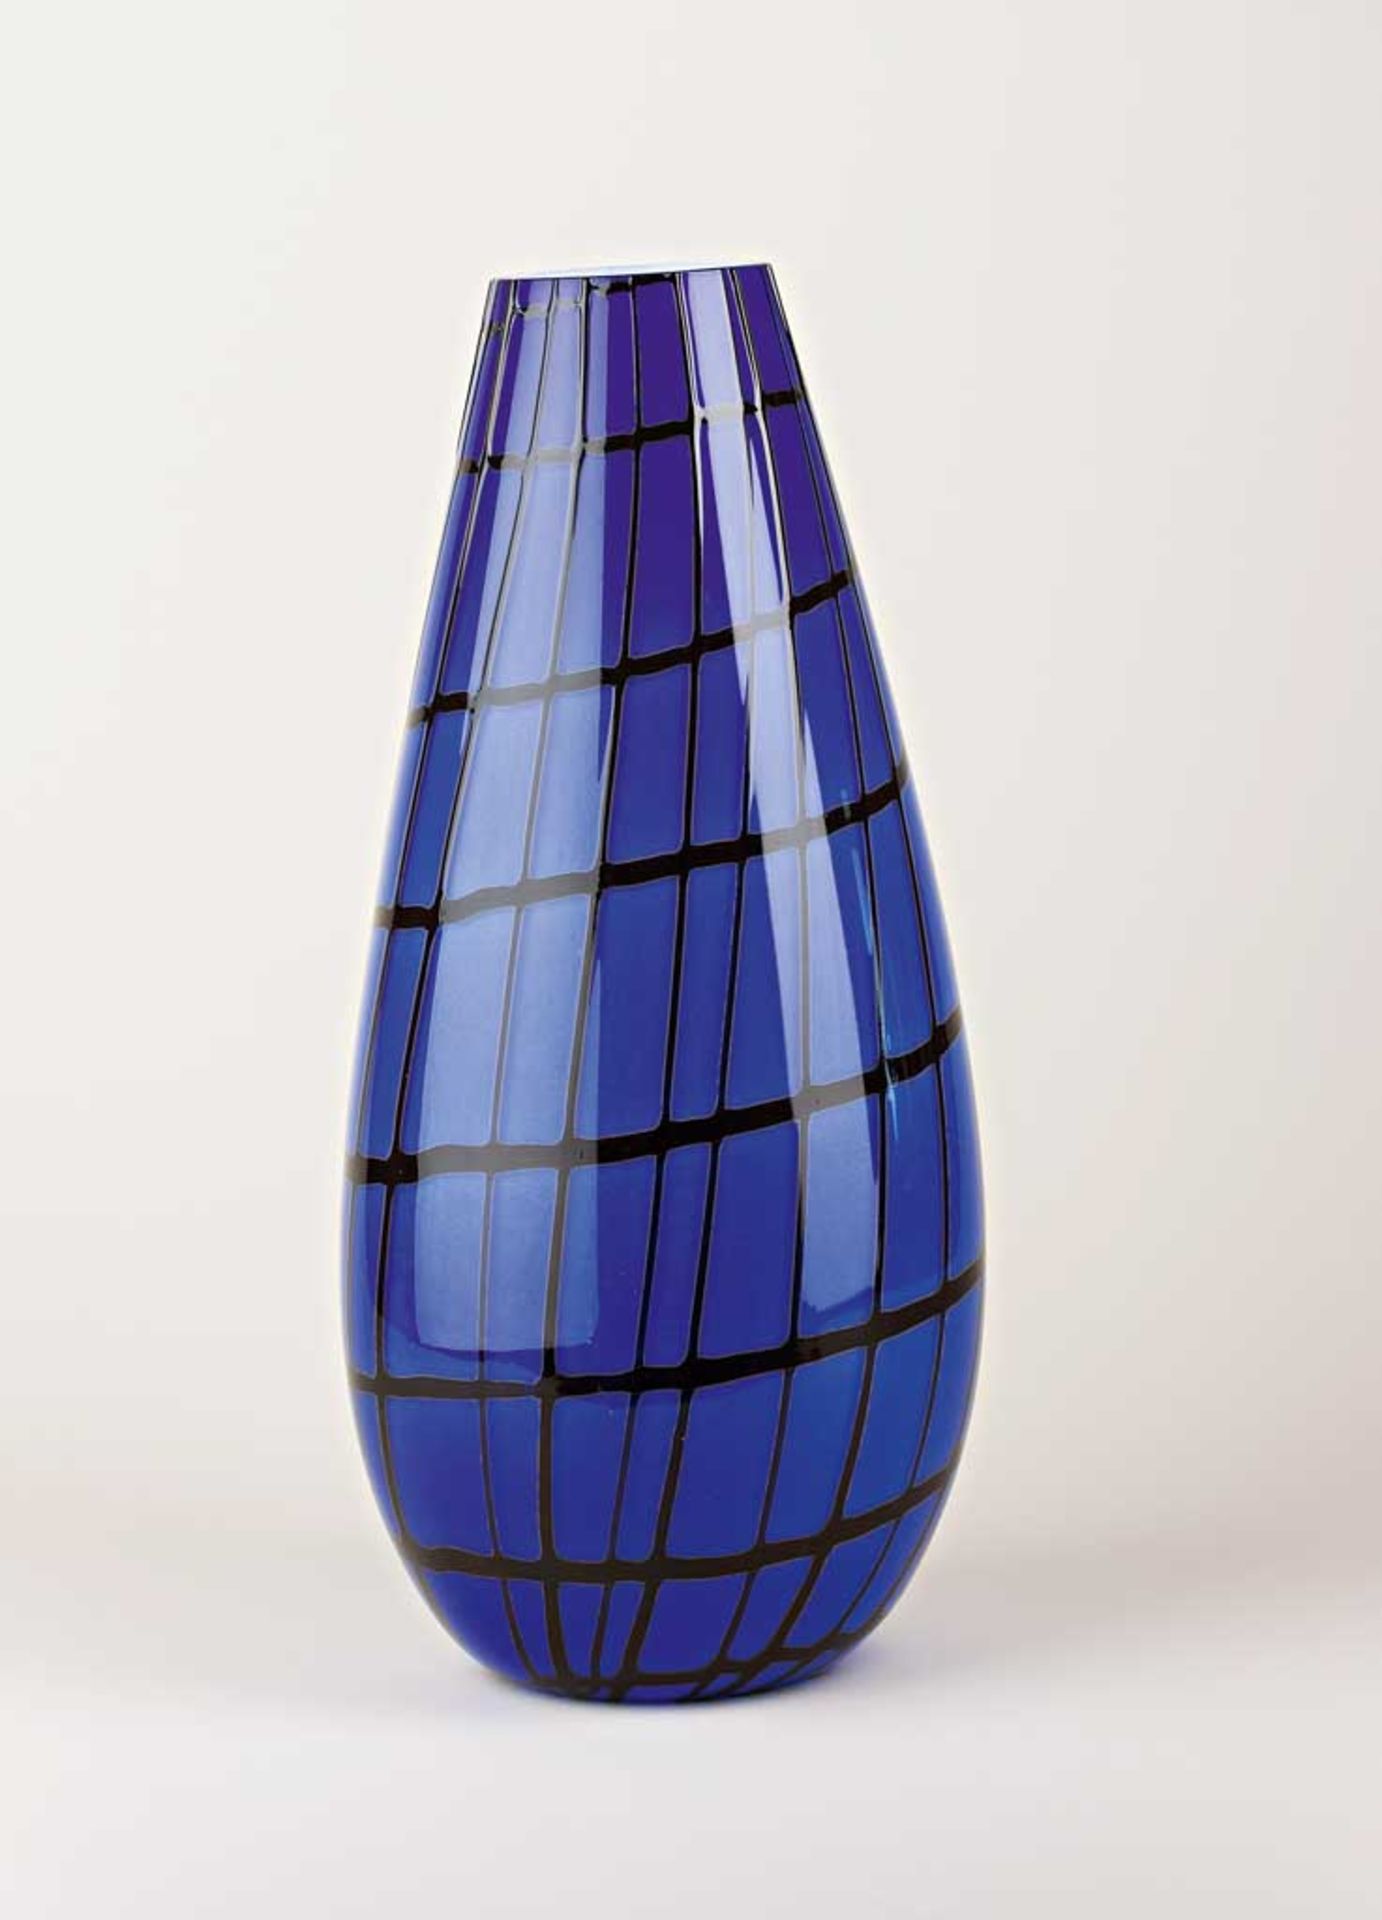 Große keulenförmige Vase. Blau mit schwarzer Aufschmelzung, innen weiß. Am Boden bez. Paolo